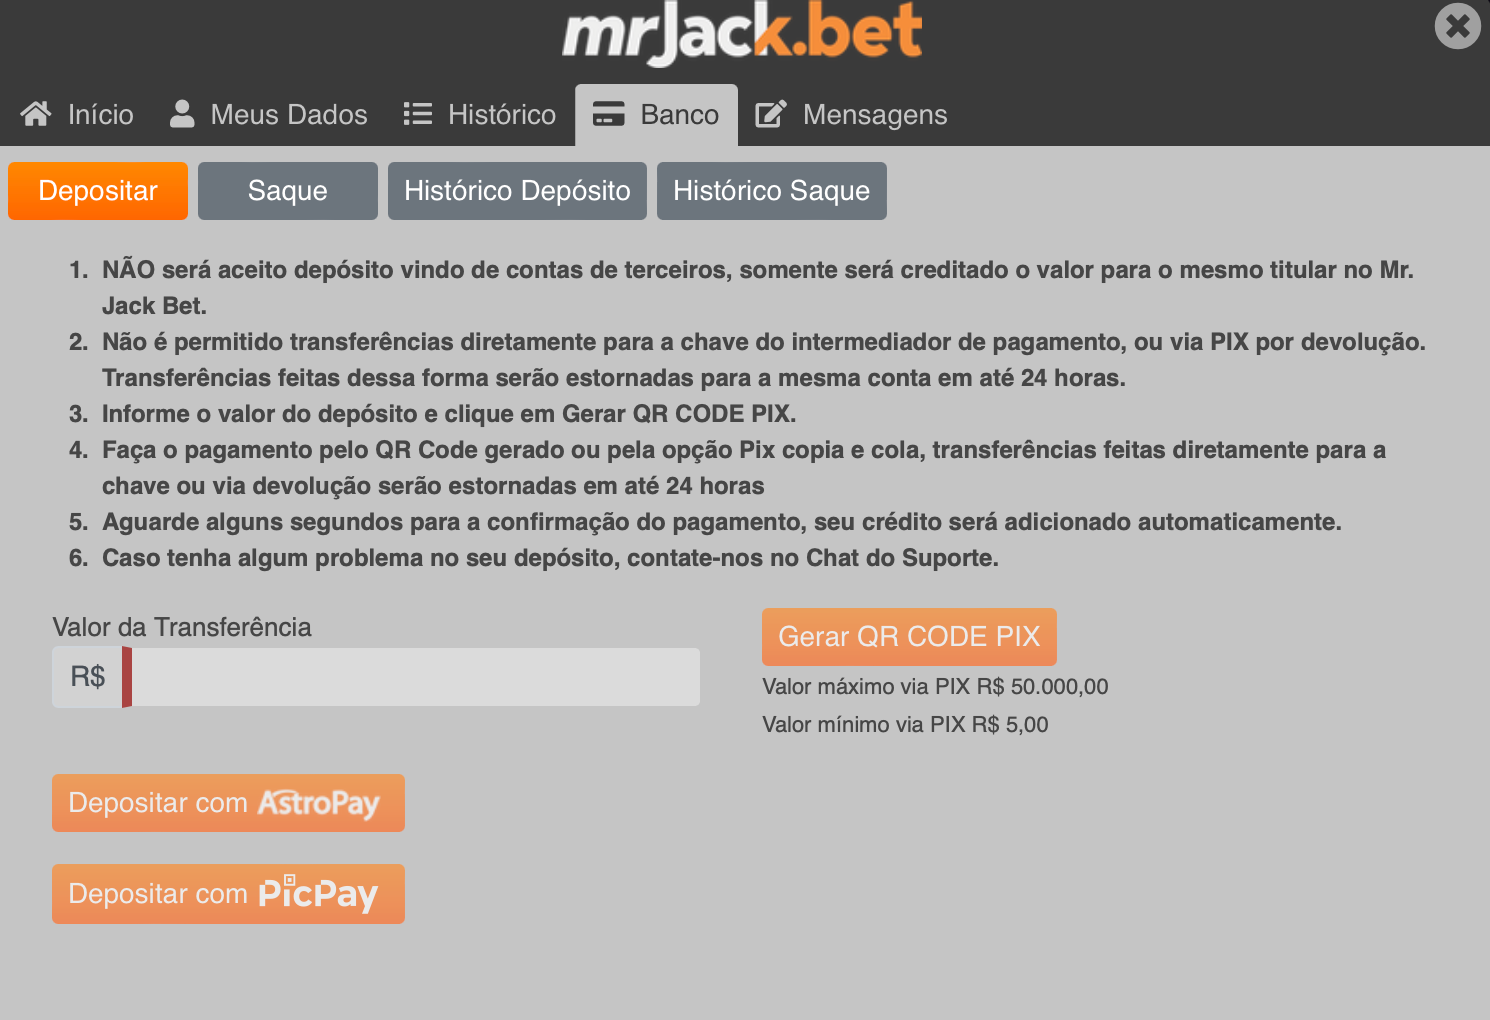 MrJack.bet é uma das casas de apostas que aceitam depósitos mínimos a partir de R$1. 